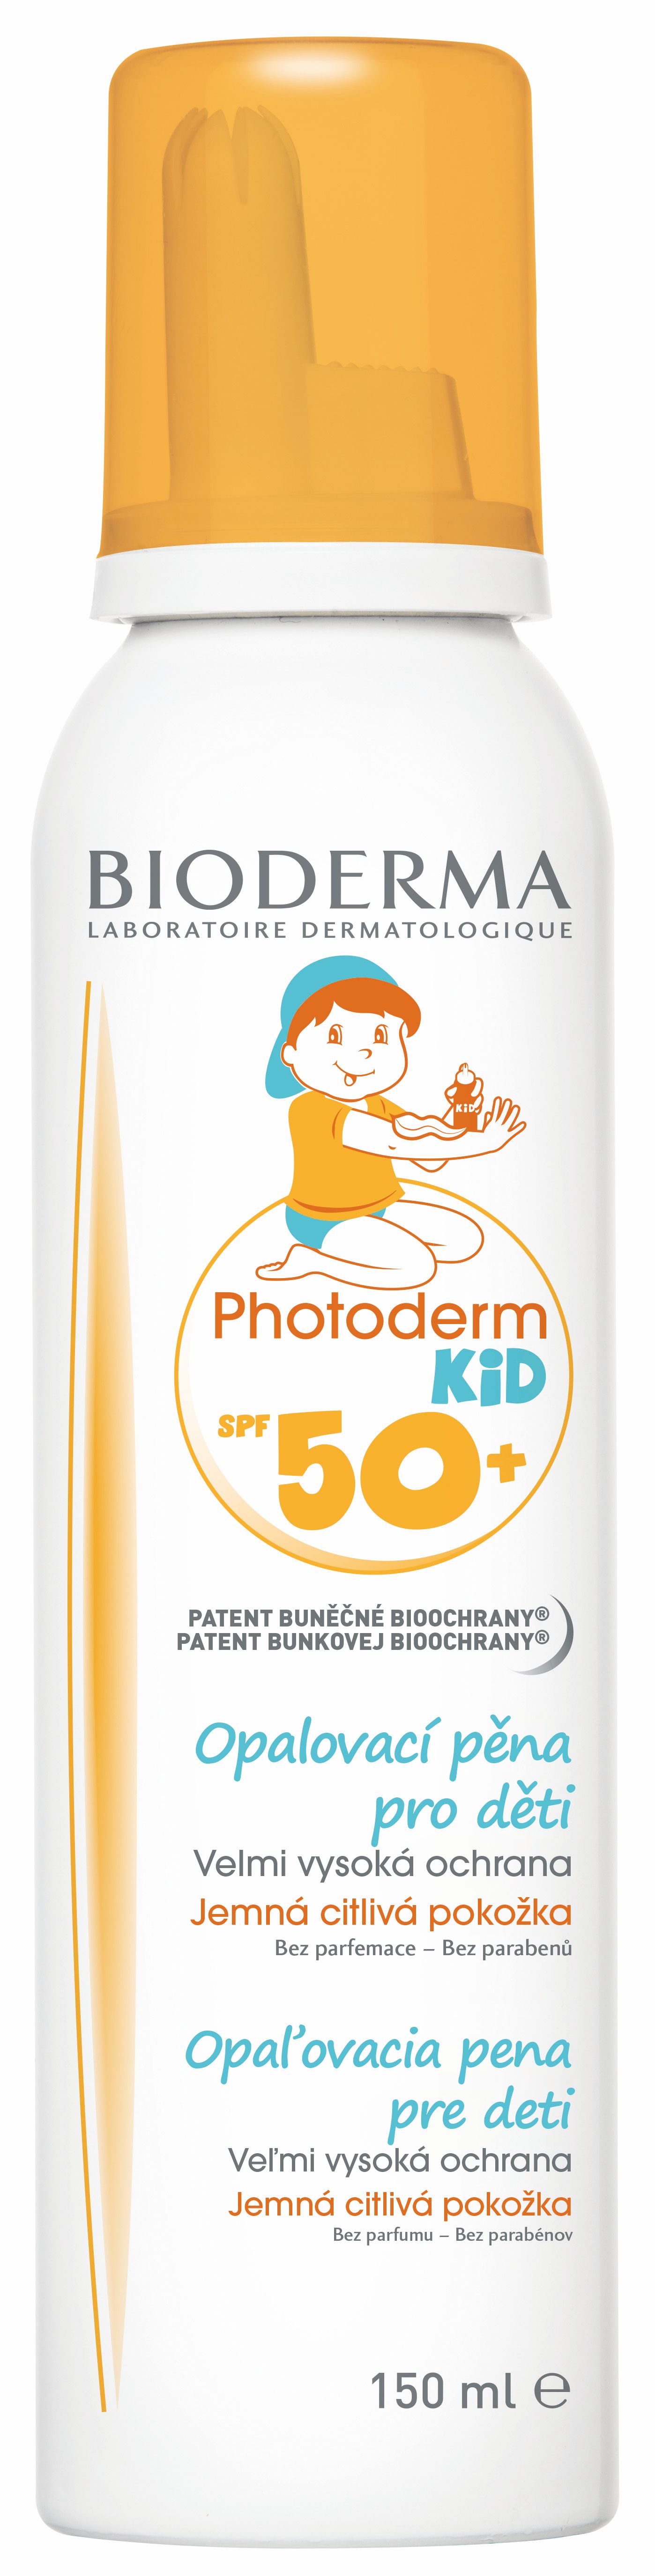 BIODERMA Photoderm KID pro děti SPF50+ opalovací pěna 150 ml BIODERMA